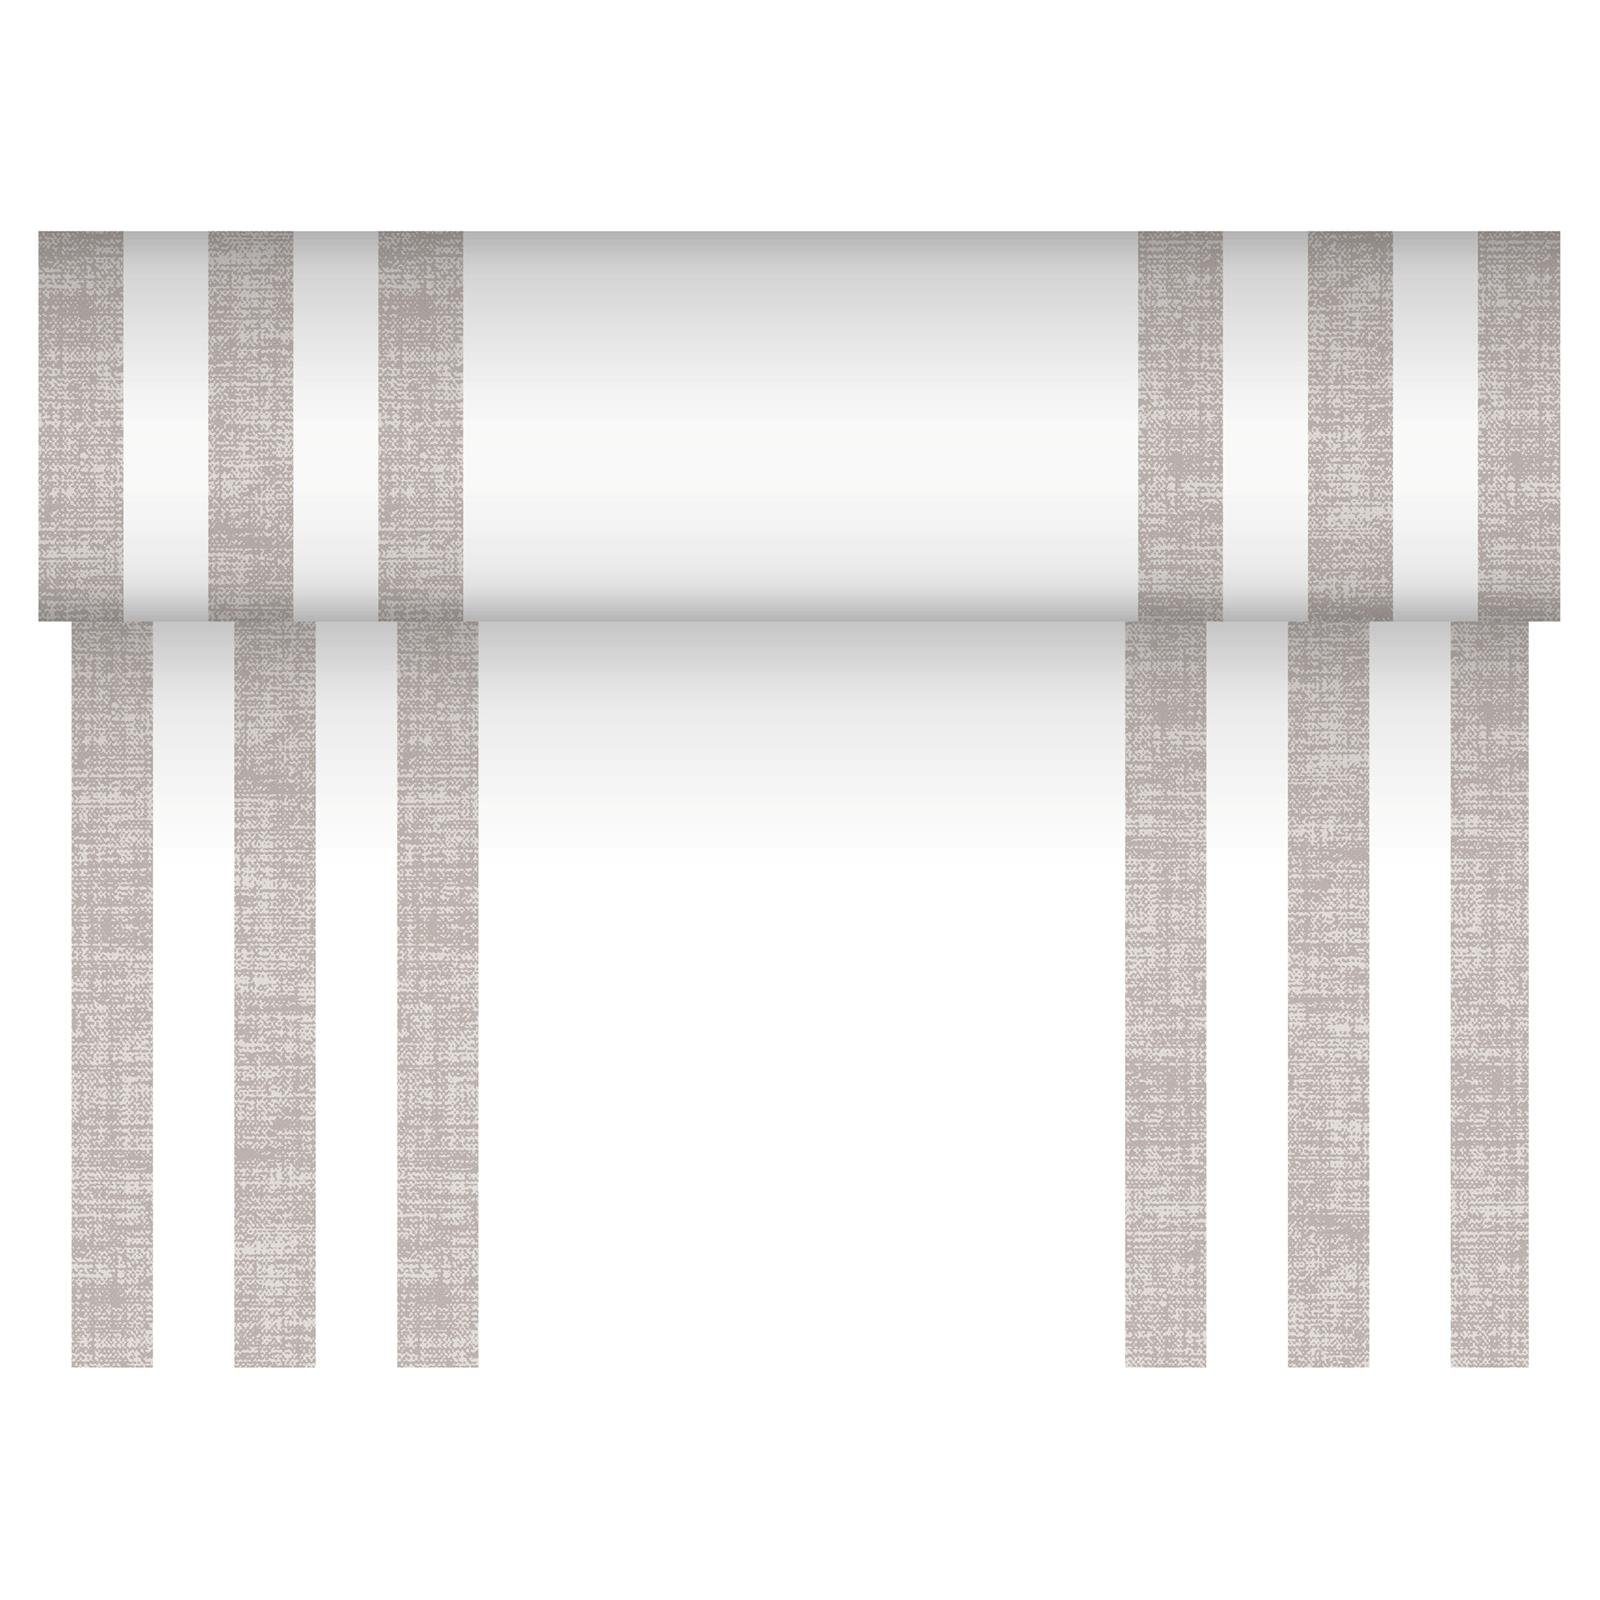 PAPSTAR Tischläufer 24 Tischläufer grau Collection Mix Lines PV-Tissue cm ROYAL 40 m x